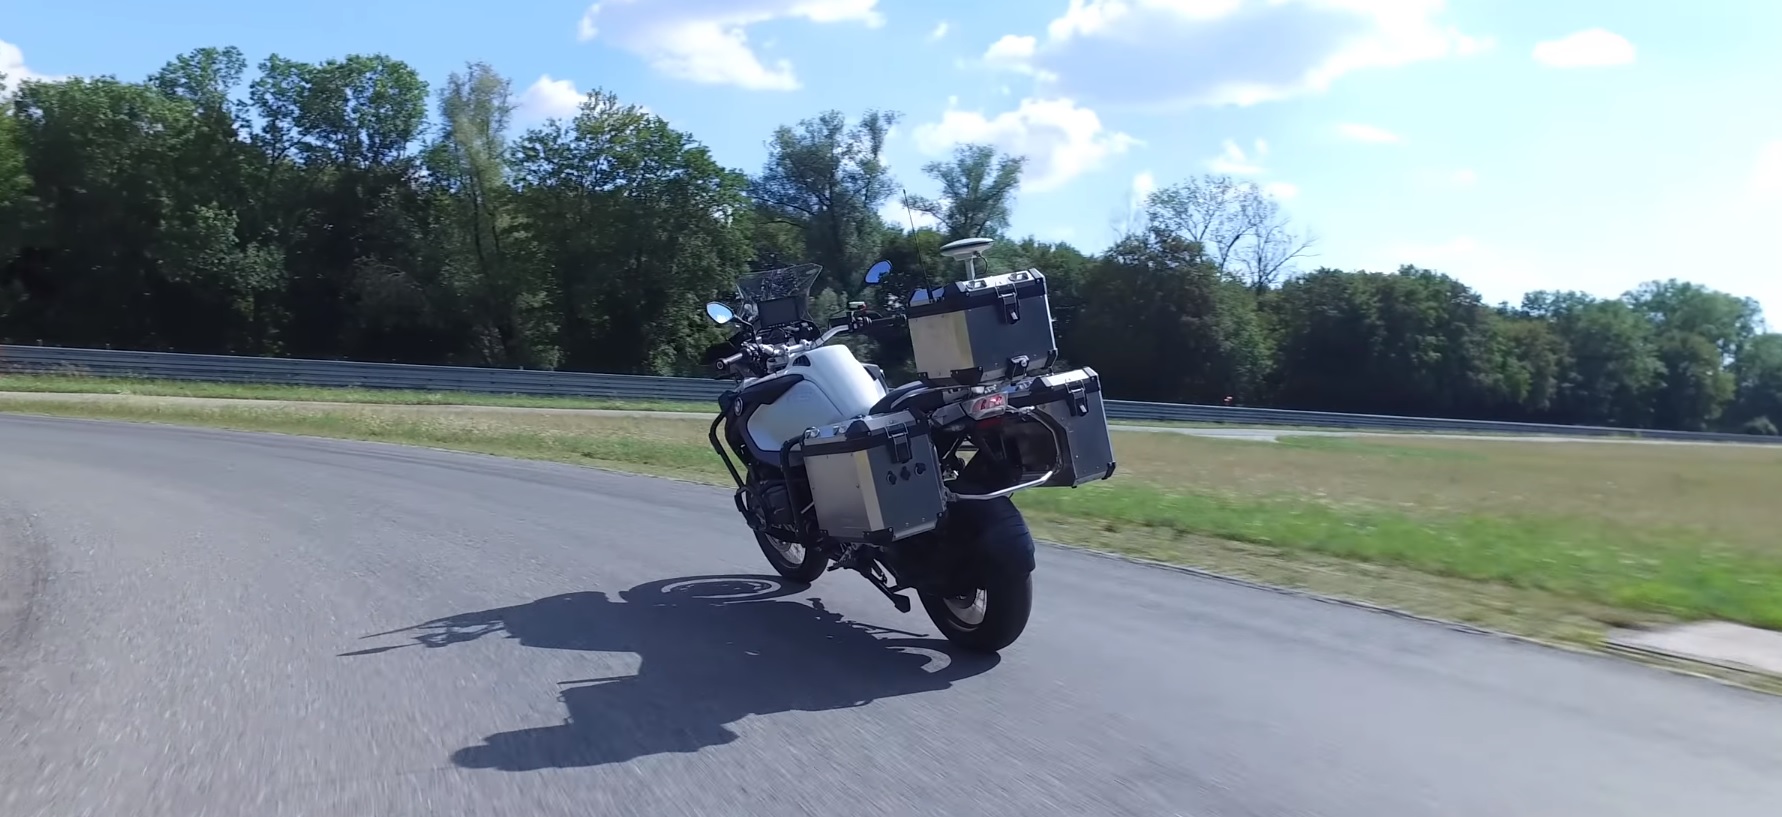 BMW作成した無人の二輪車の試験が新しいセキュリティシステム